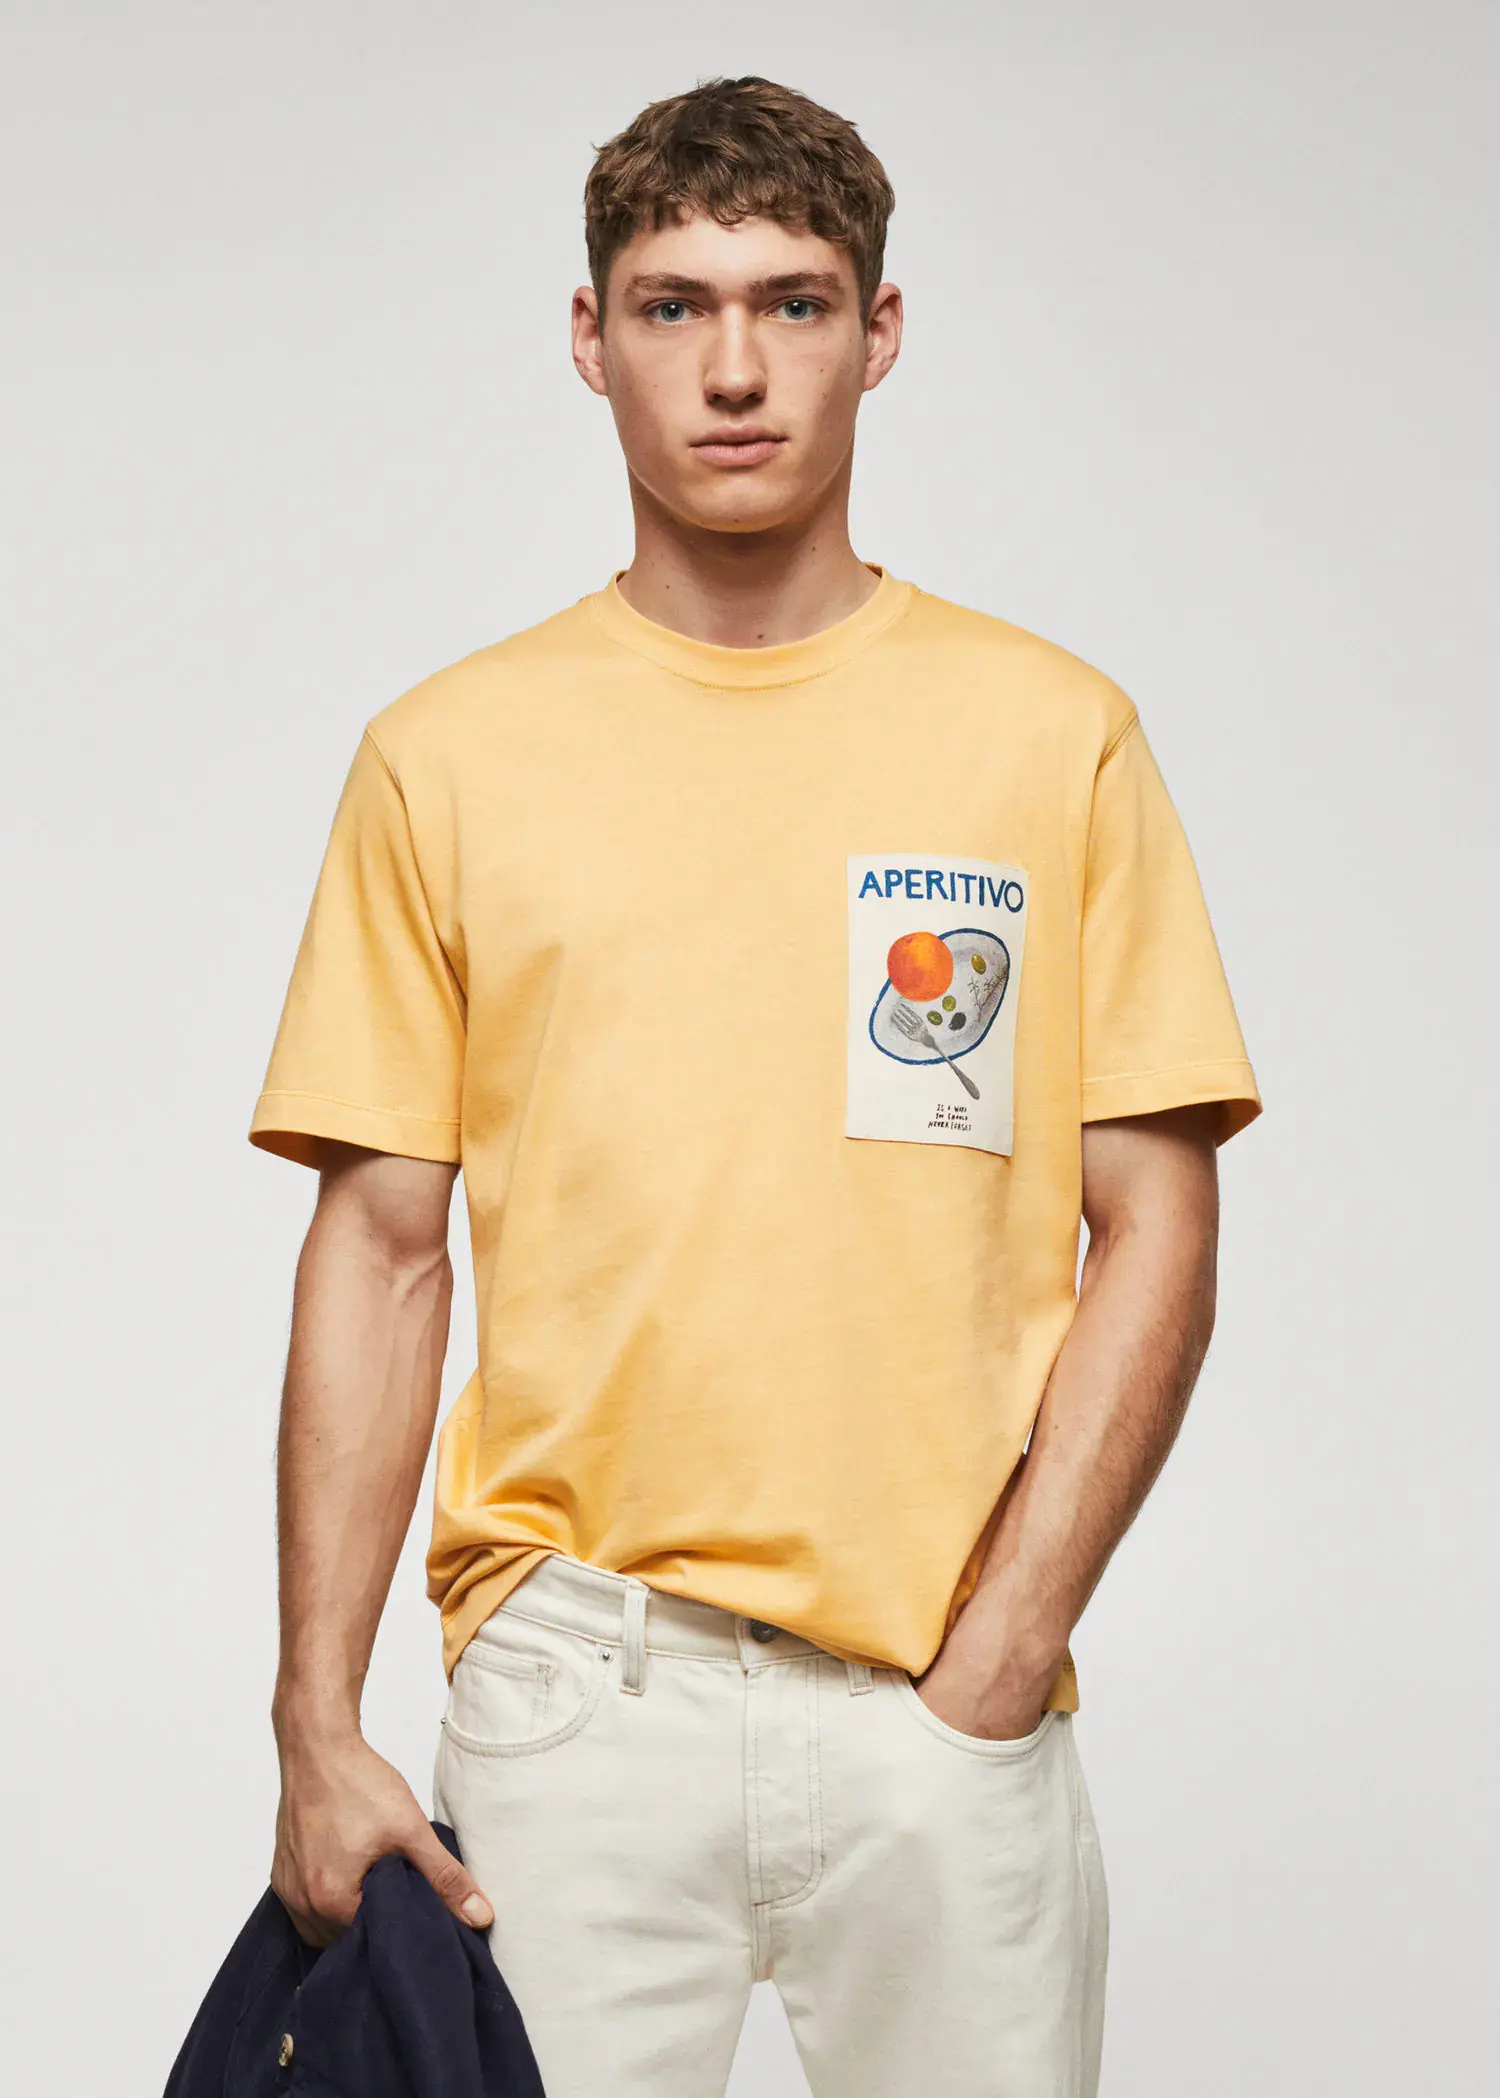 Mango Adriana Eskenazi x Mango t-shirt. a man in a yellow t-shirt is wearing white pants. 